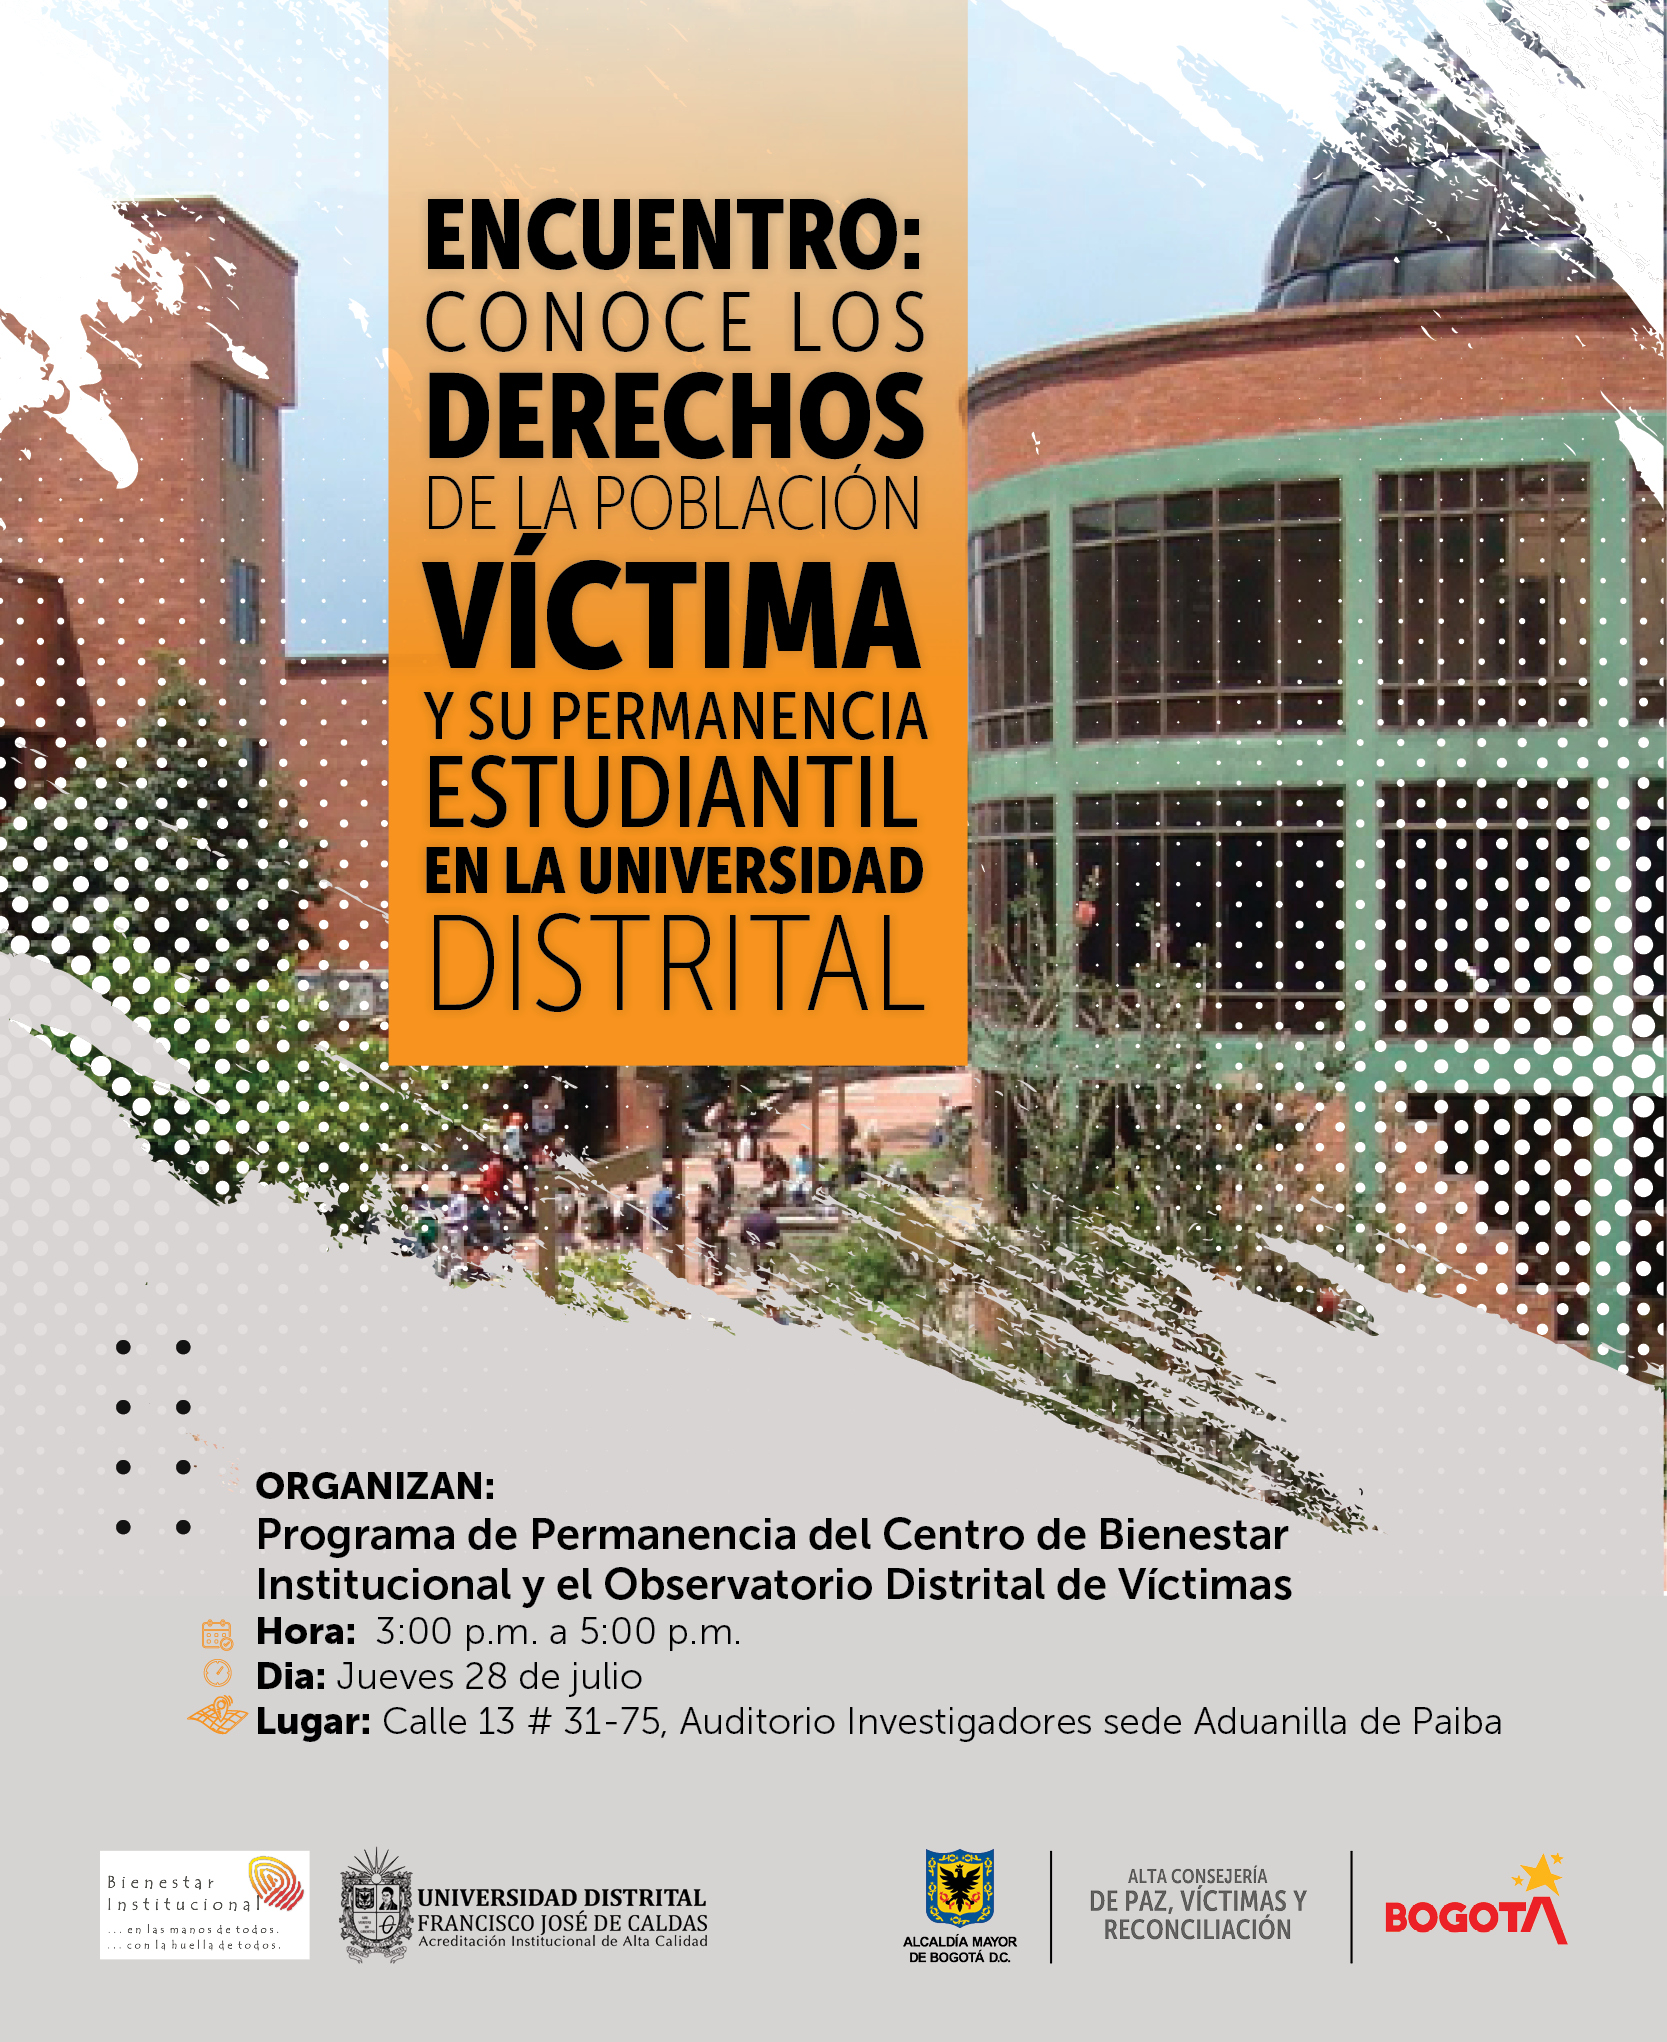 Encuentro: Permanencia estudiantil y titulación de la población víctima en Bogotá